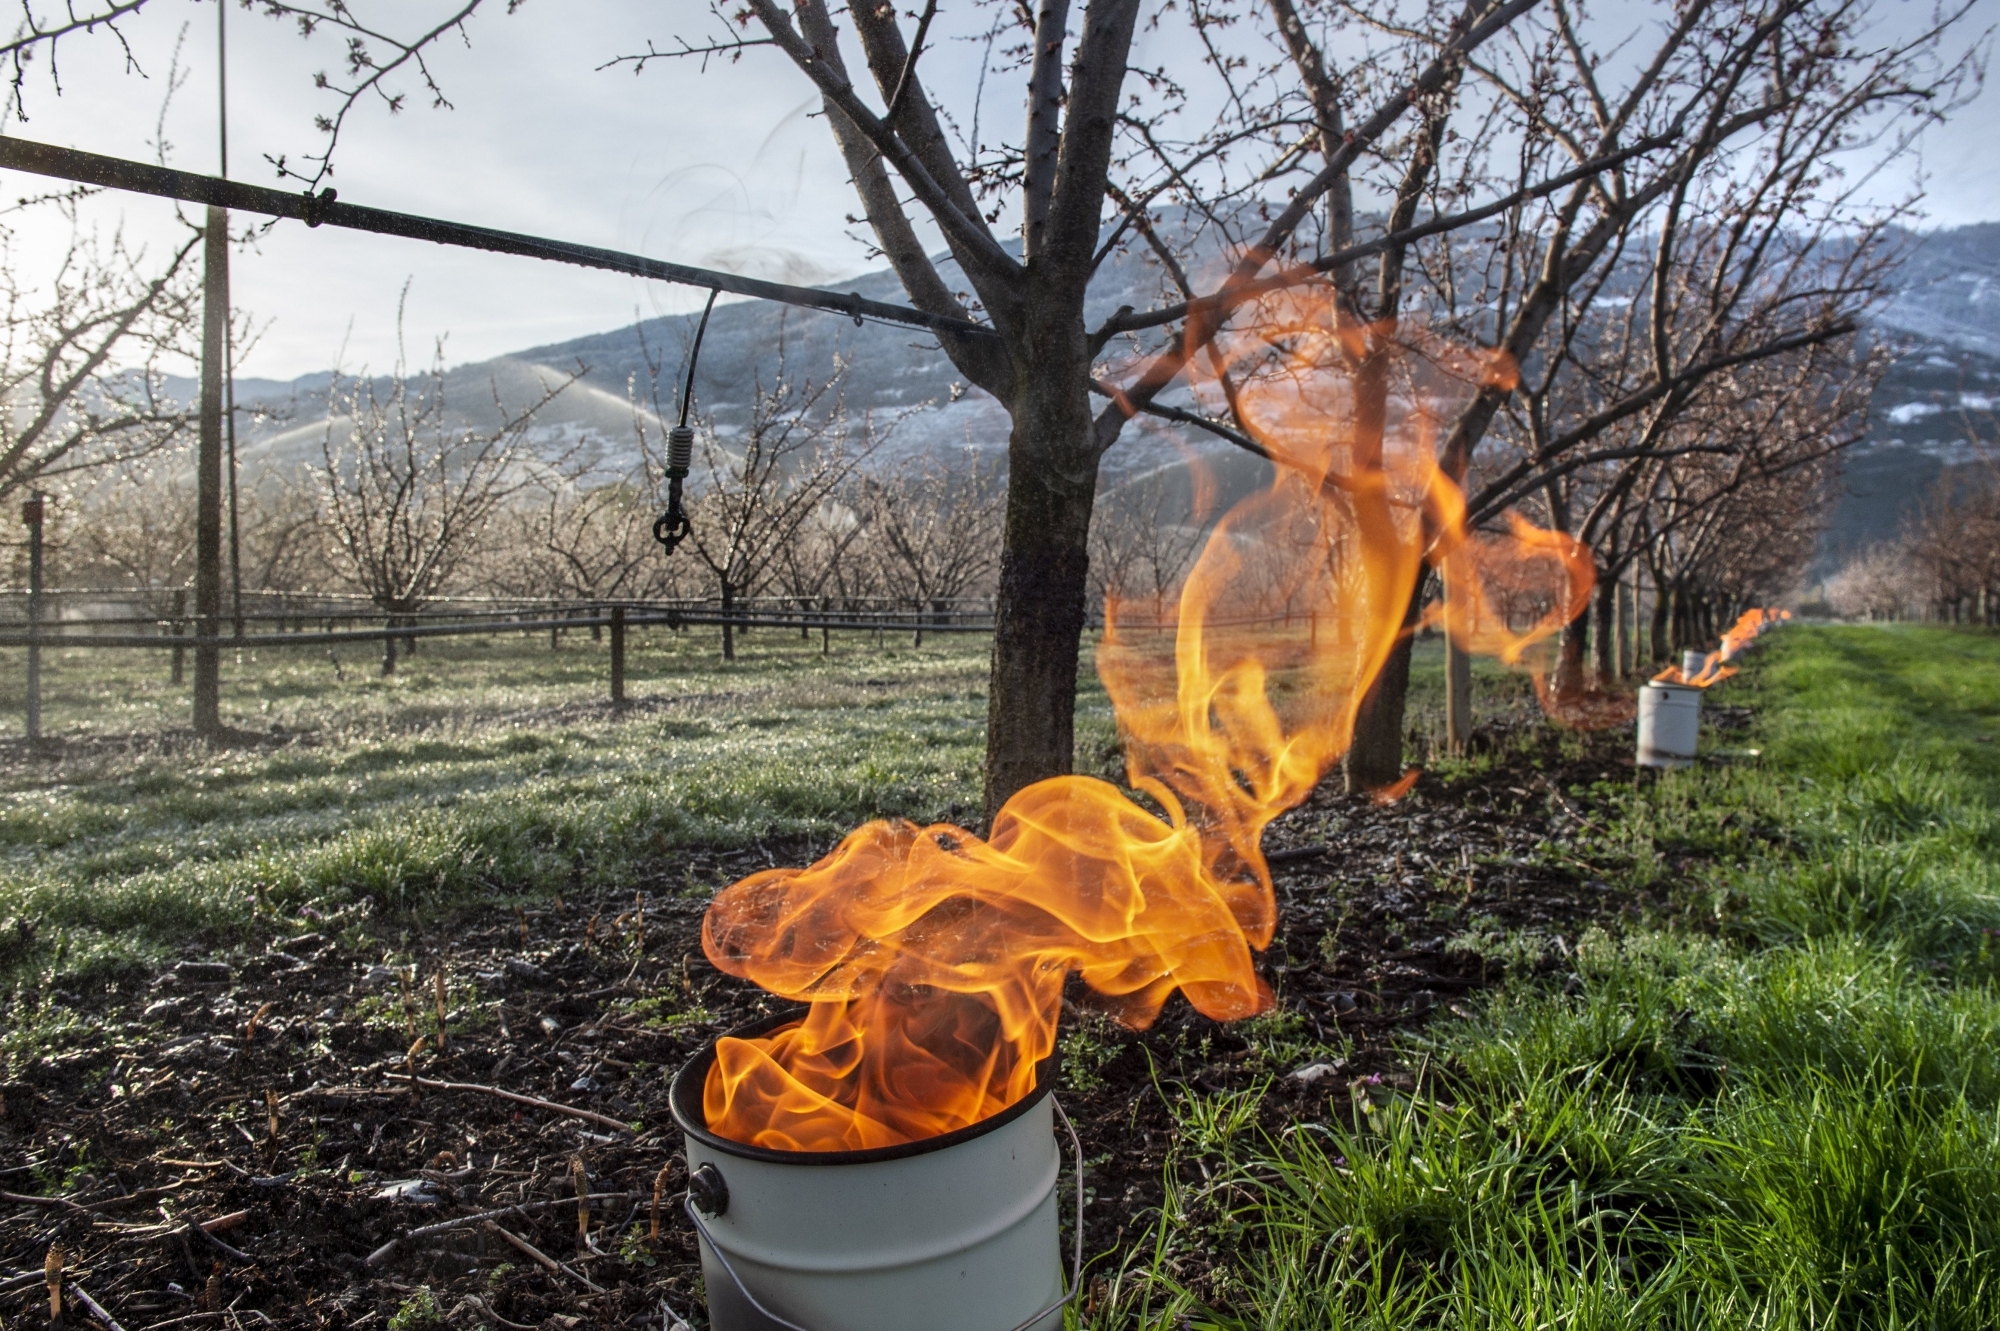 Les arboriculteurs valaisans se préparent à lutter contre le gel annoncé. Les bougies à la paraffine sont régulièrement utilisées.